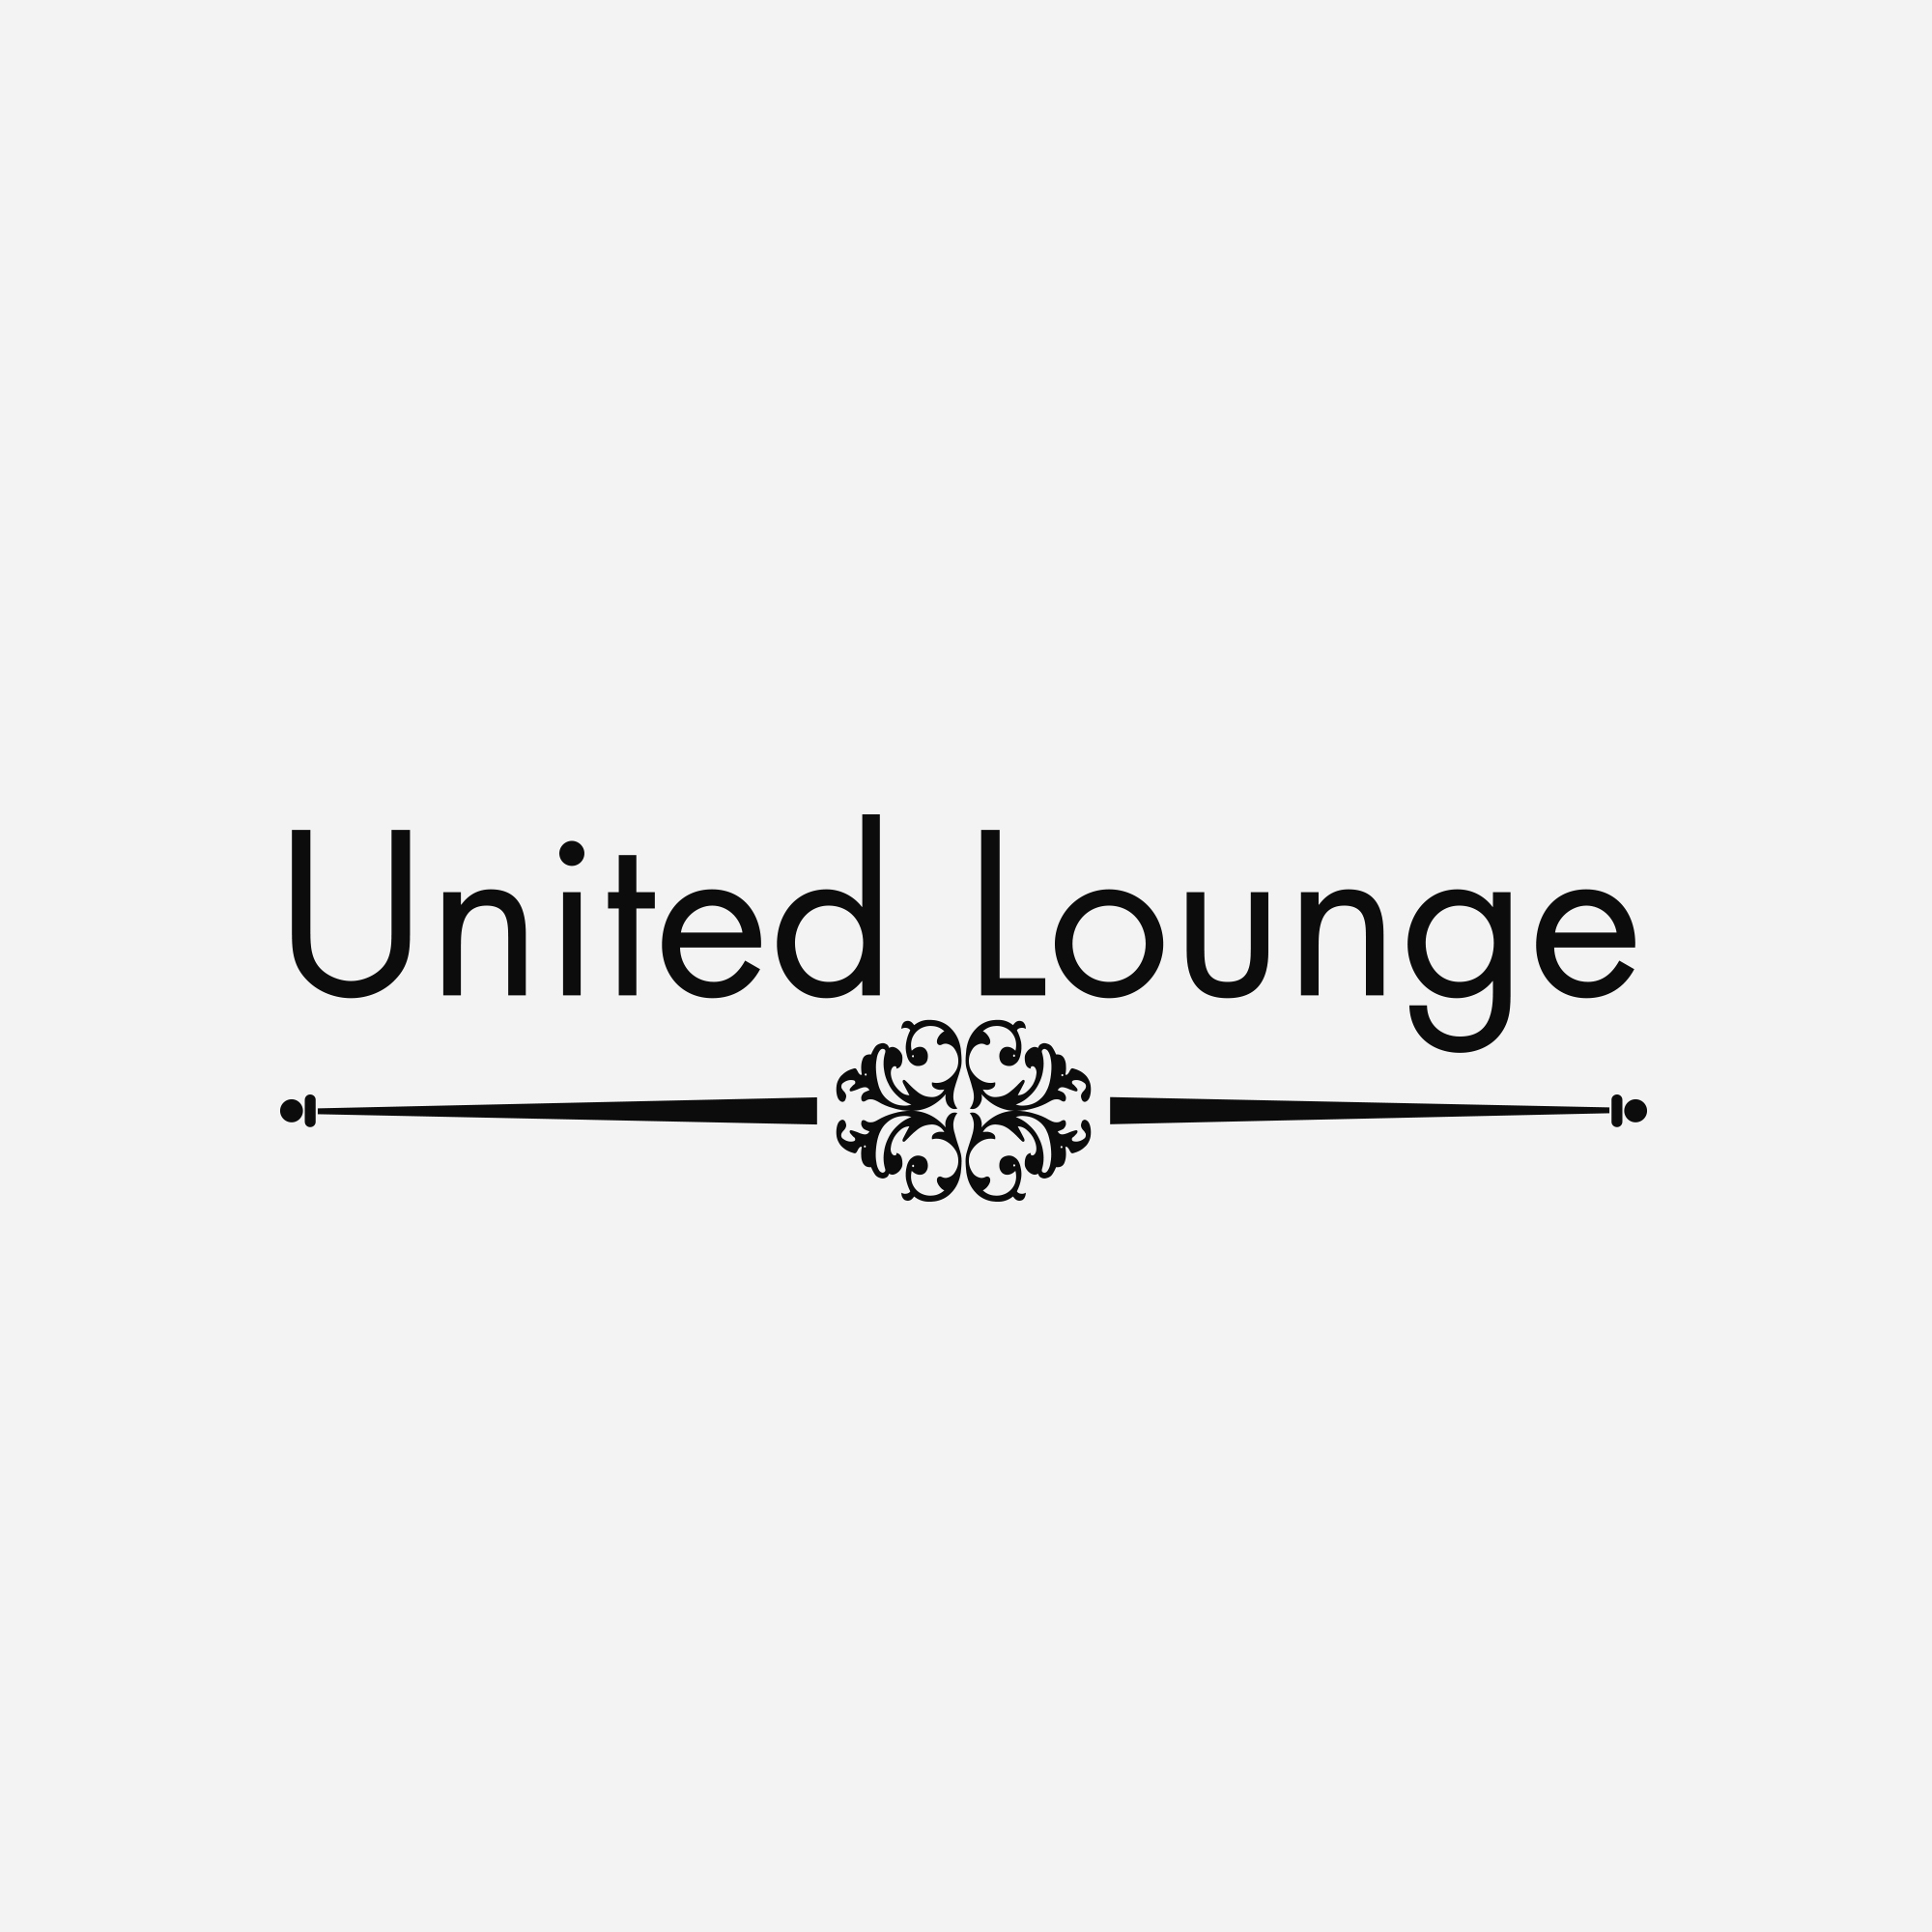 画像未登録時の代替え画像のUnited Loungeのロゴバナー